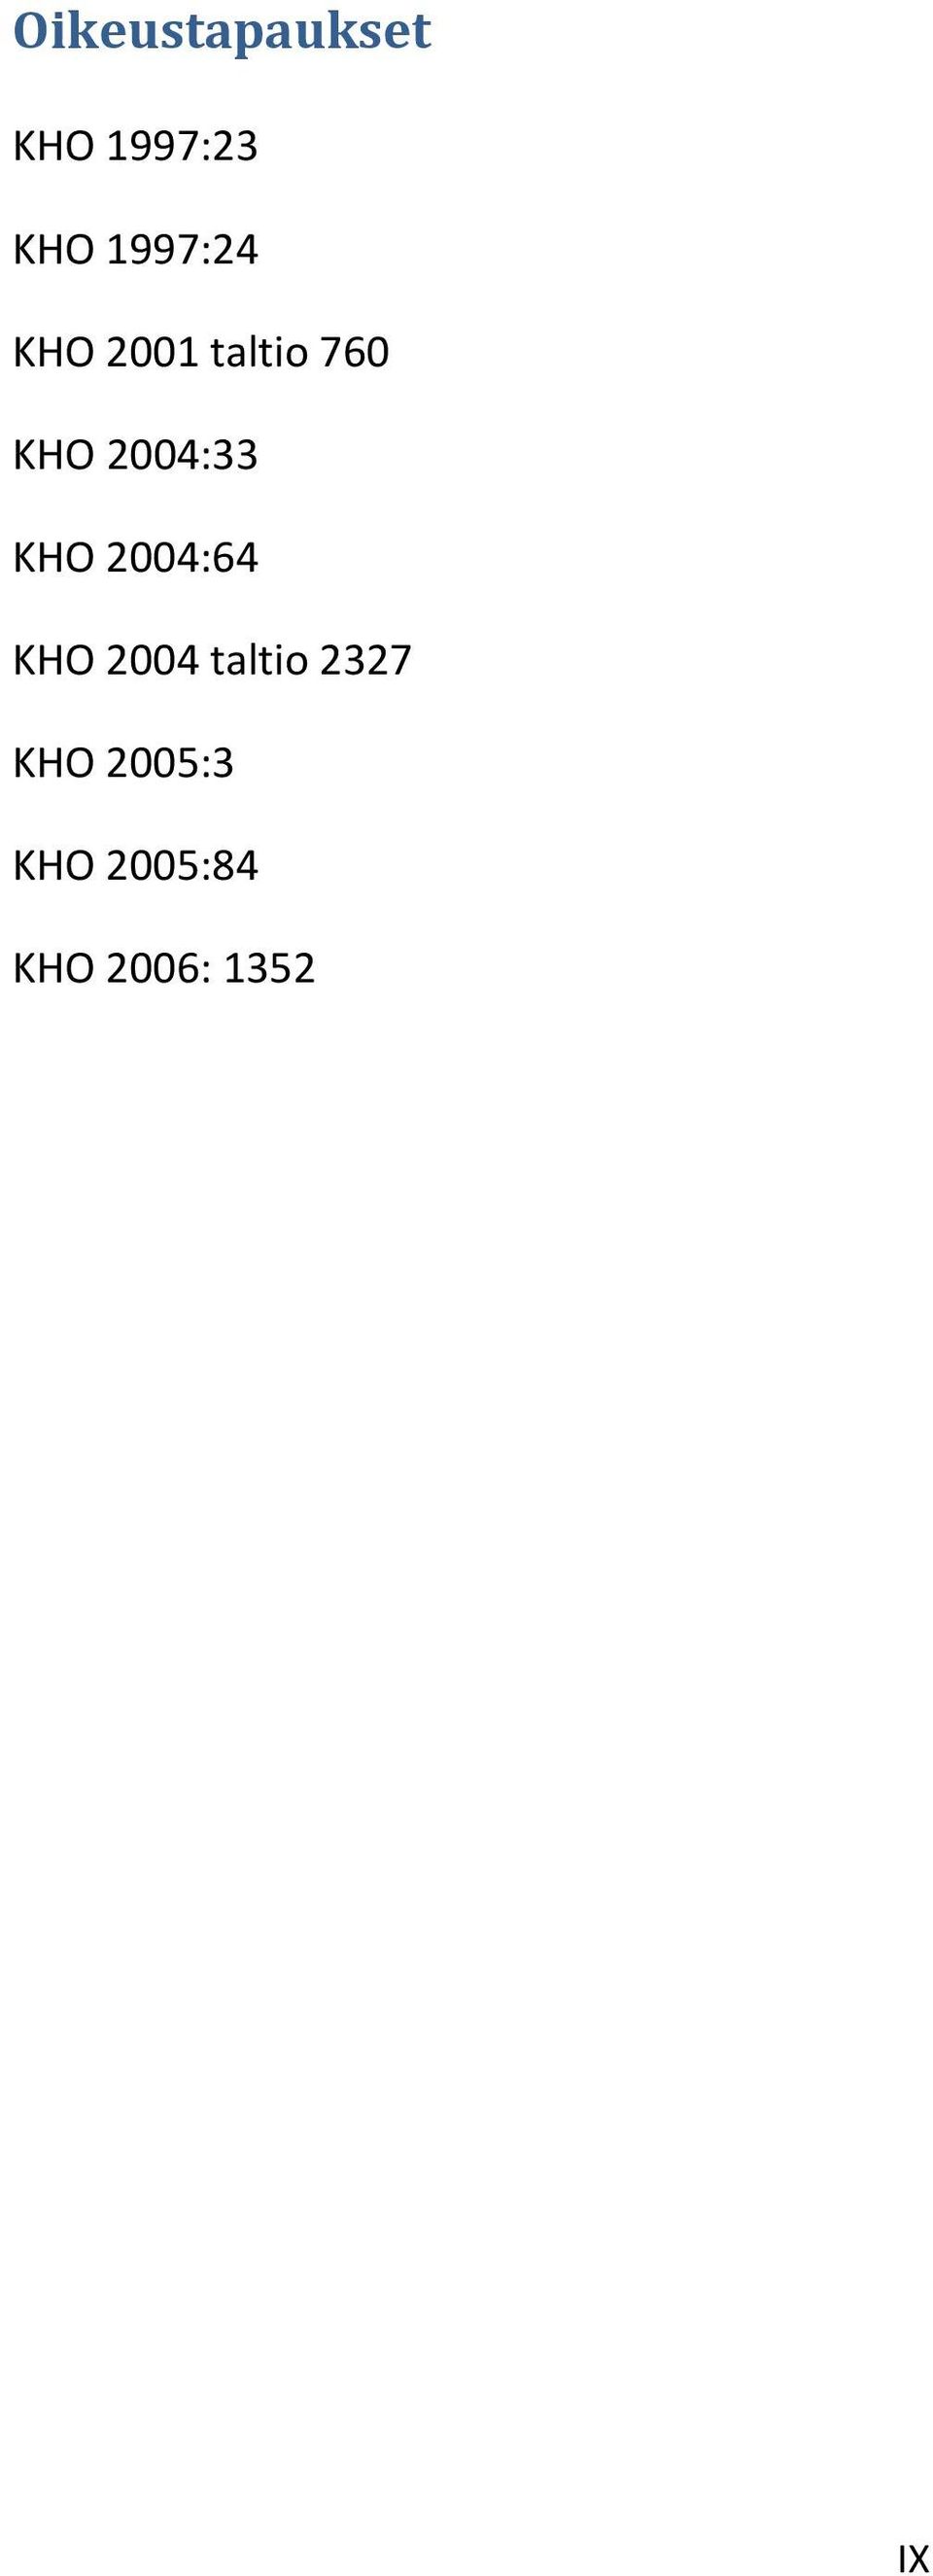 2004:33 KHO 2004:64 KHO 2004 taltio